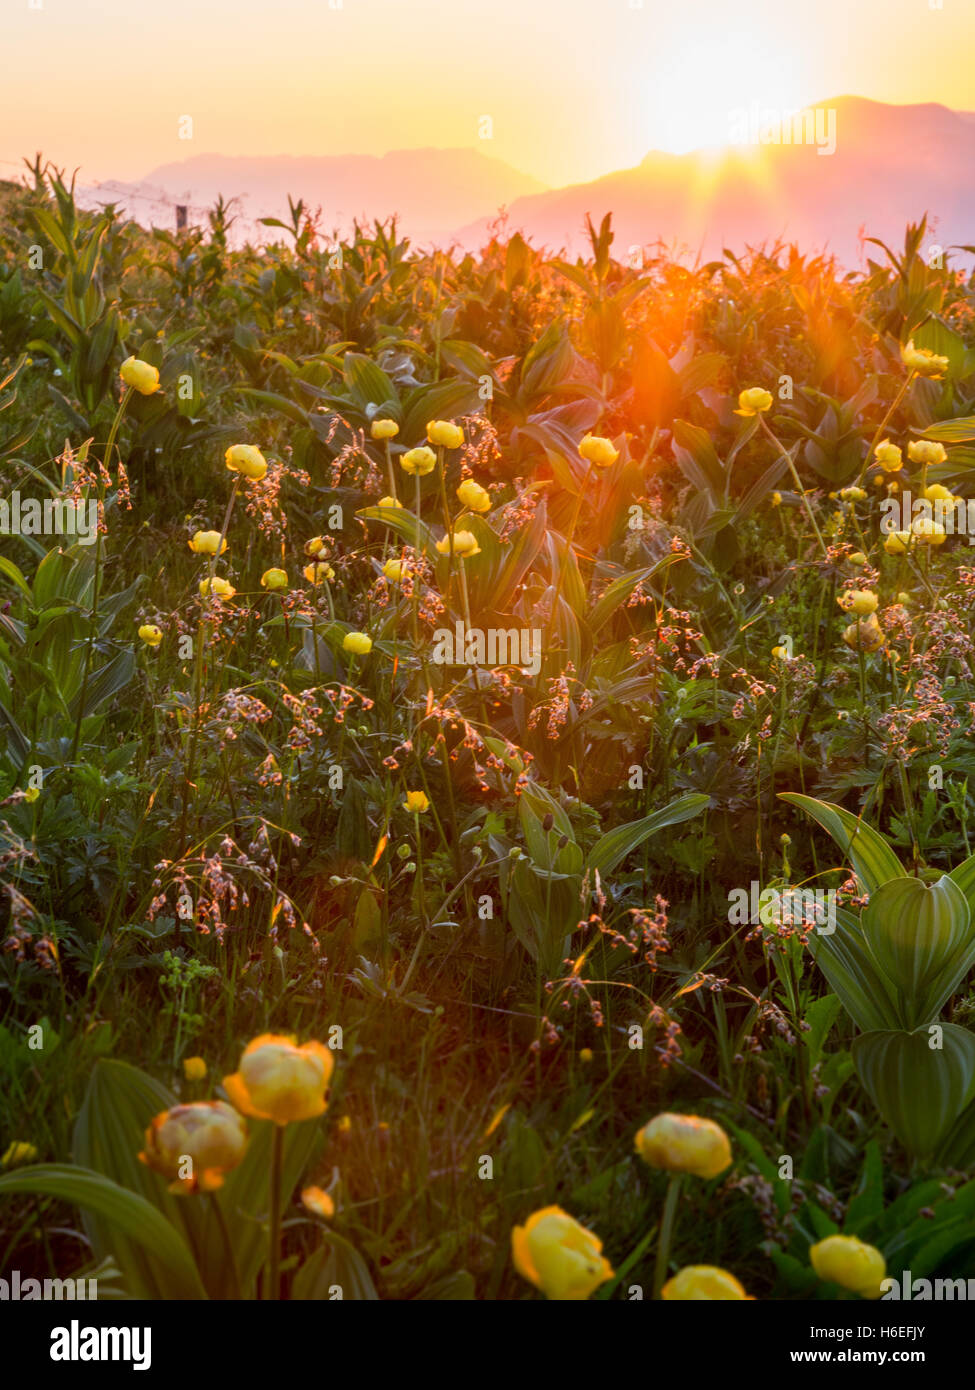 El sol detrás de las montañas y brilla una luz cálida sobre flores amarillas en el primer plano. Foto de stock